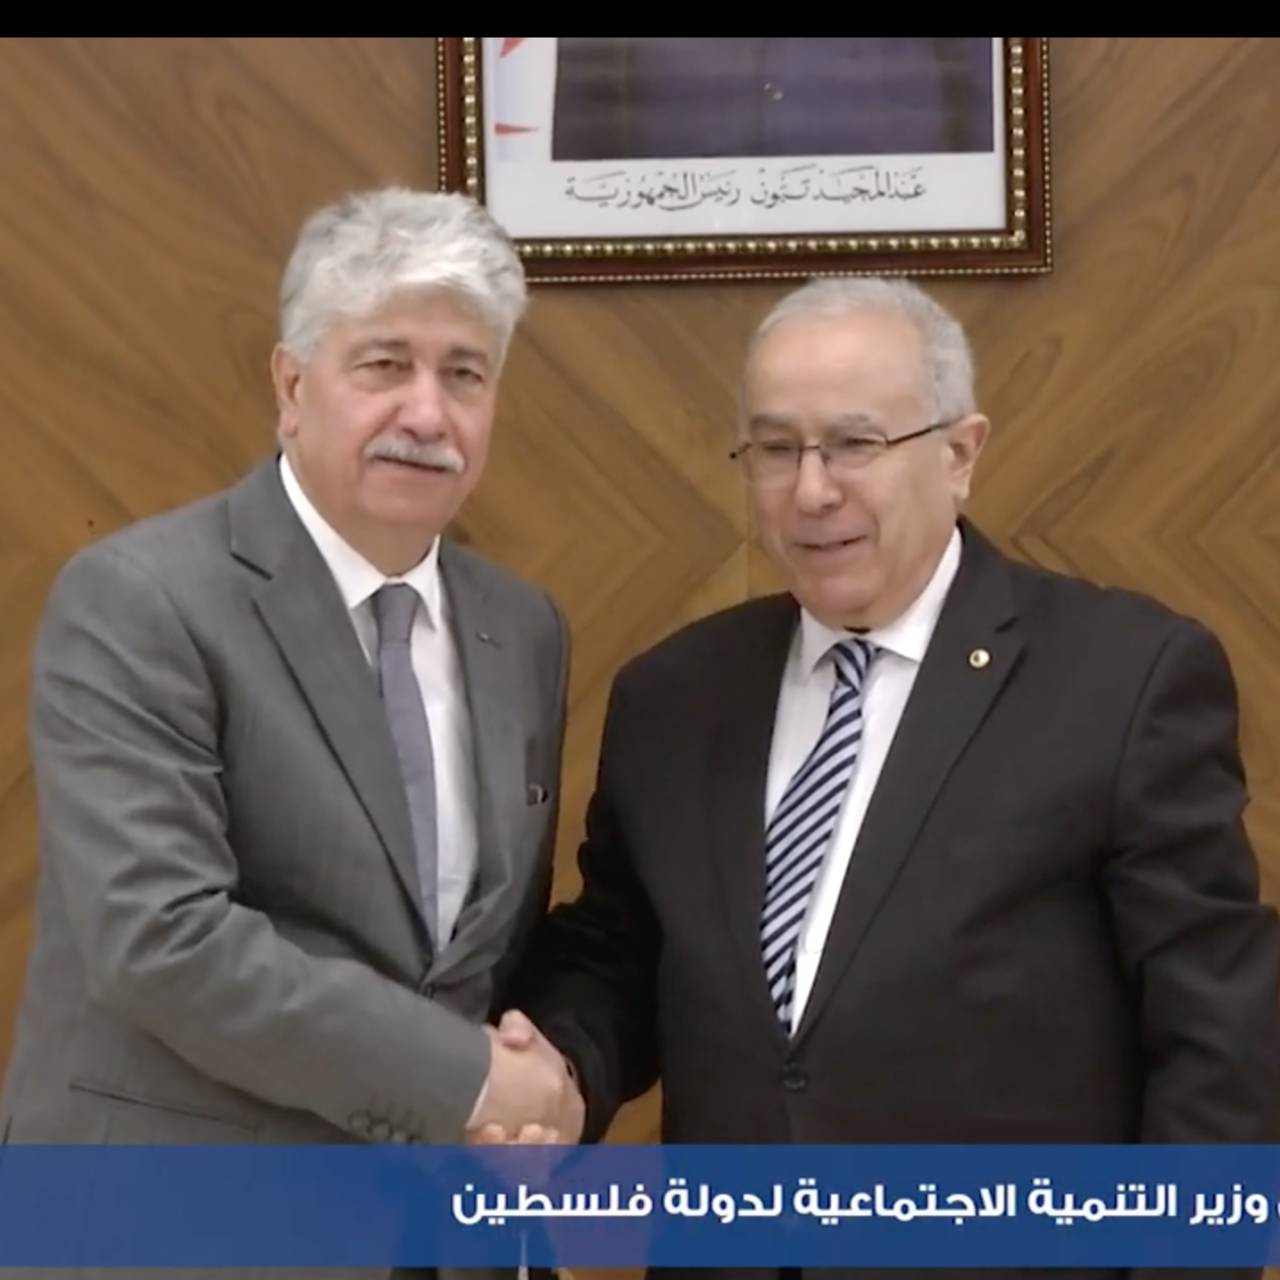 L’Algérie confirme à la Palestine ses relations de fraternité, de solidarité et de militantisme